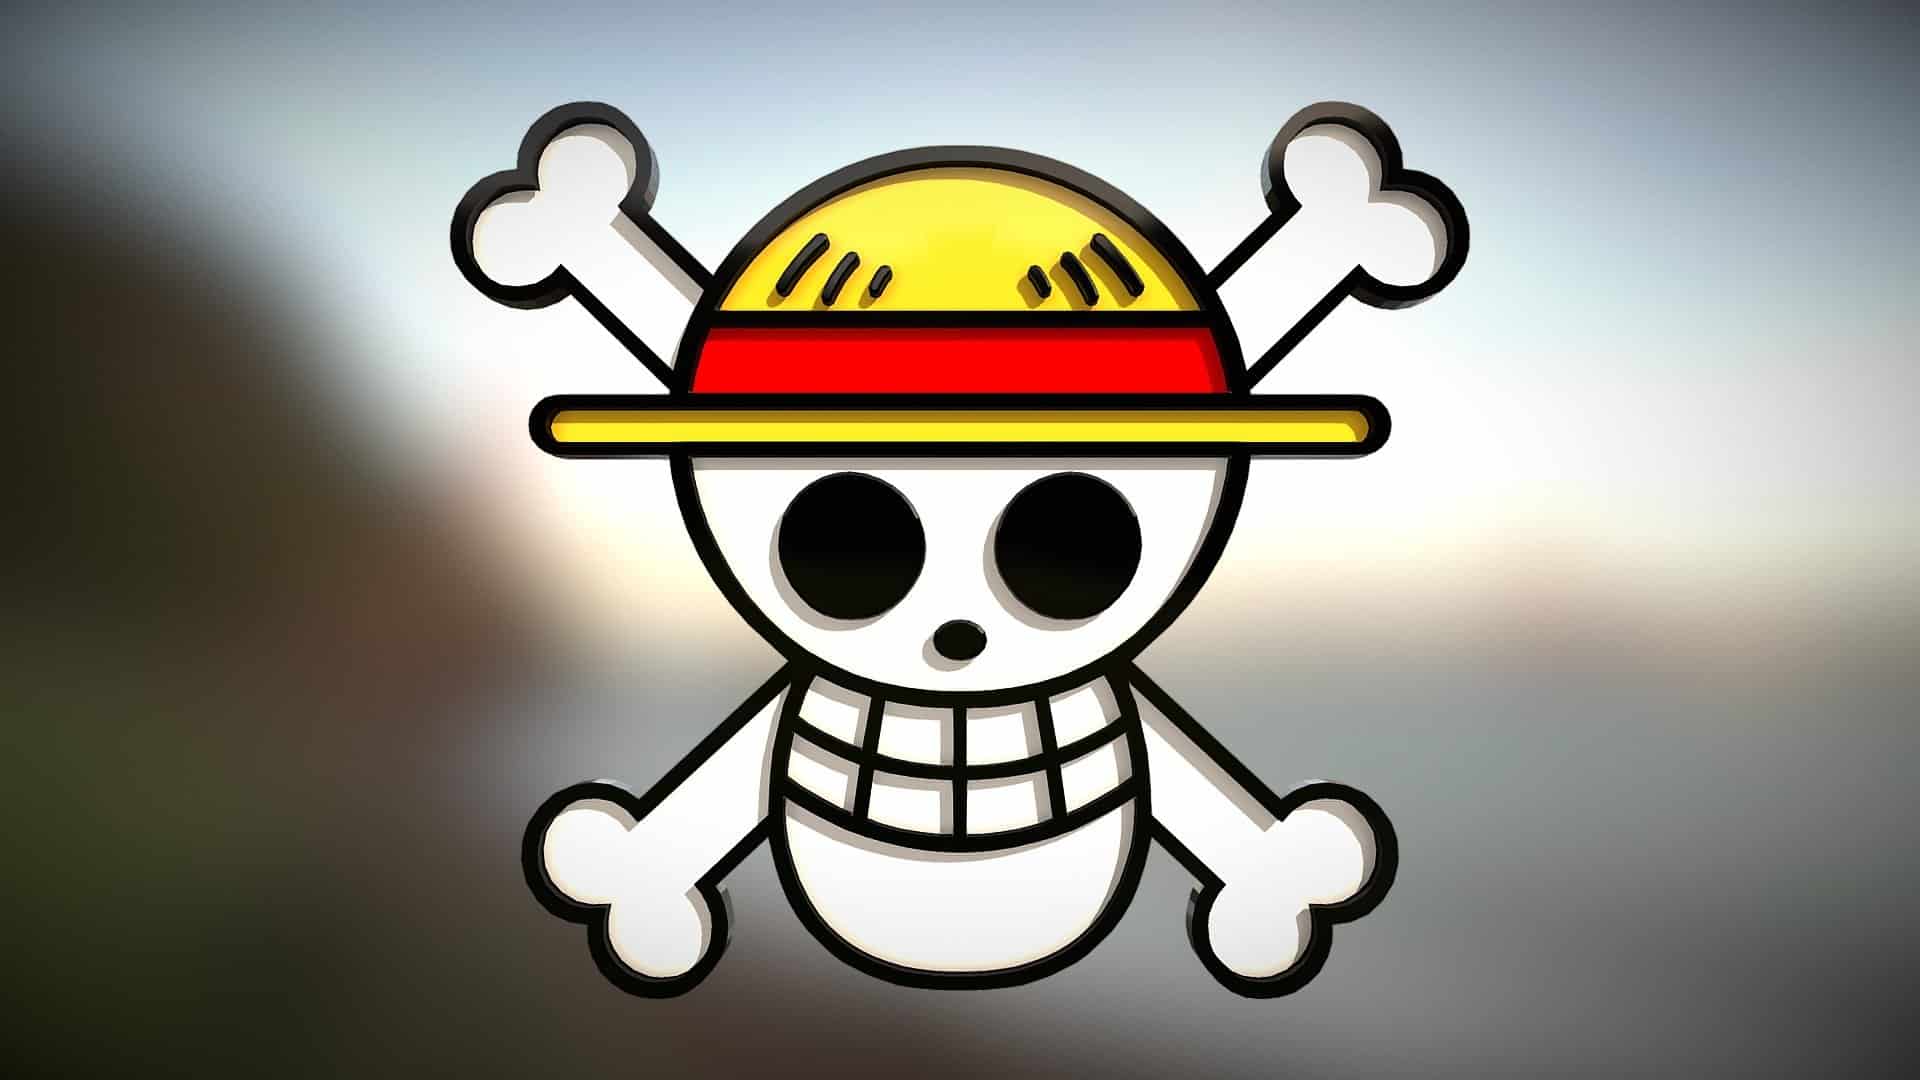 Hình ảnh logo băng hải tặc Mũ Rơm đẹp lạ